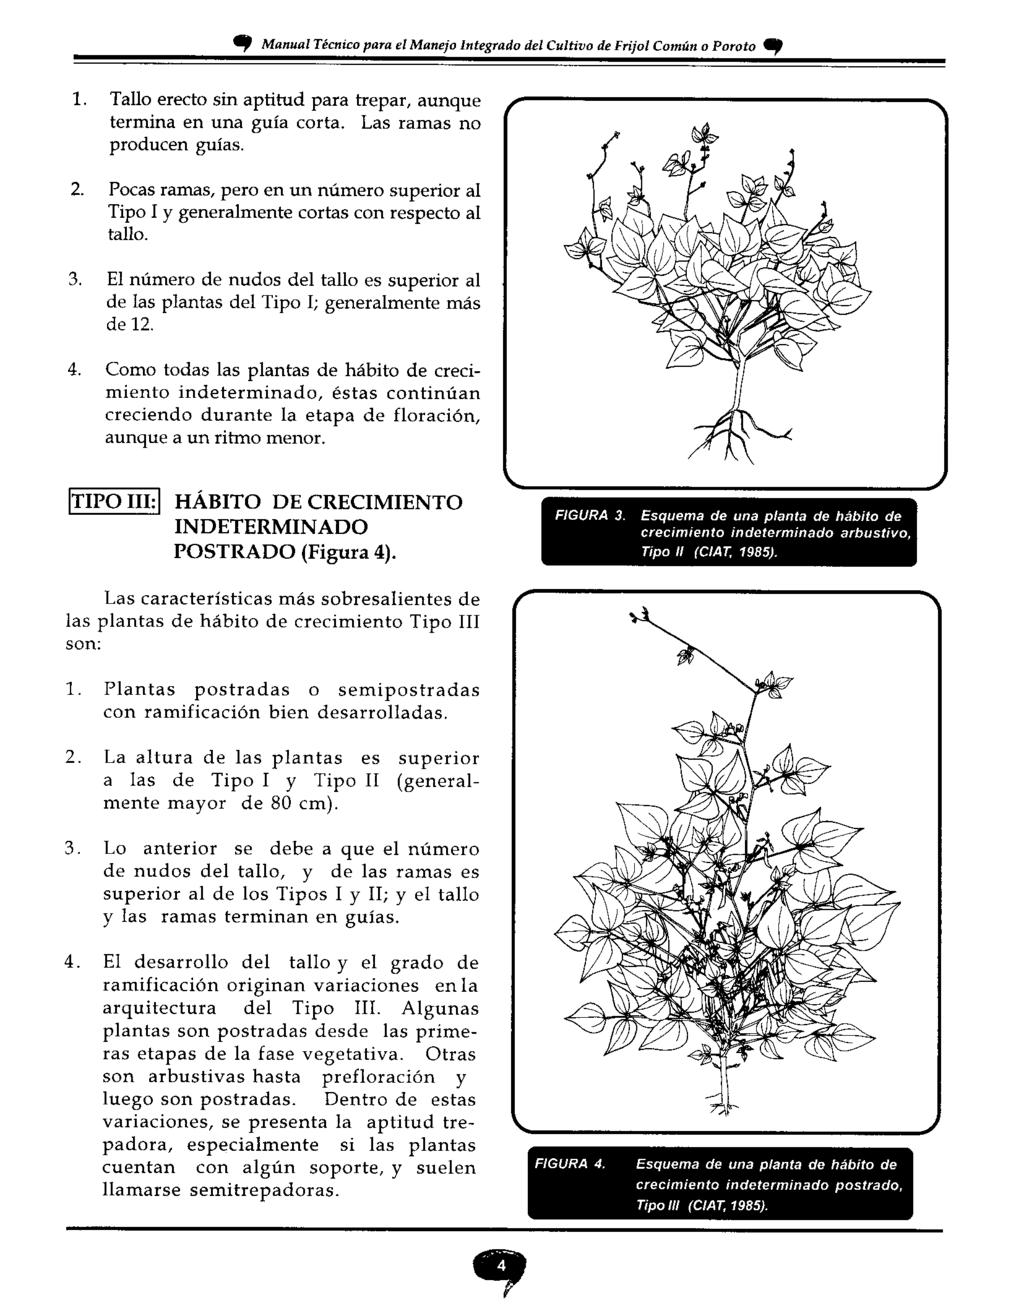 OIP Manual Técnico para el Manejo Integrado del Cultivo de Frijol Común o Poroto 1. Tallo erecto sin aptitud para trepar, aunque termina en una guía corta. Las ramas no producen guías. 2.